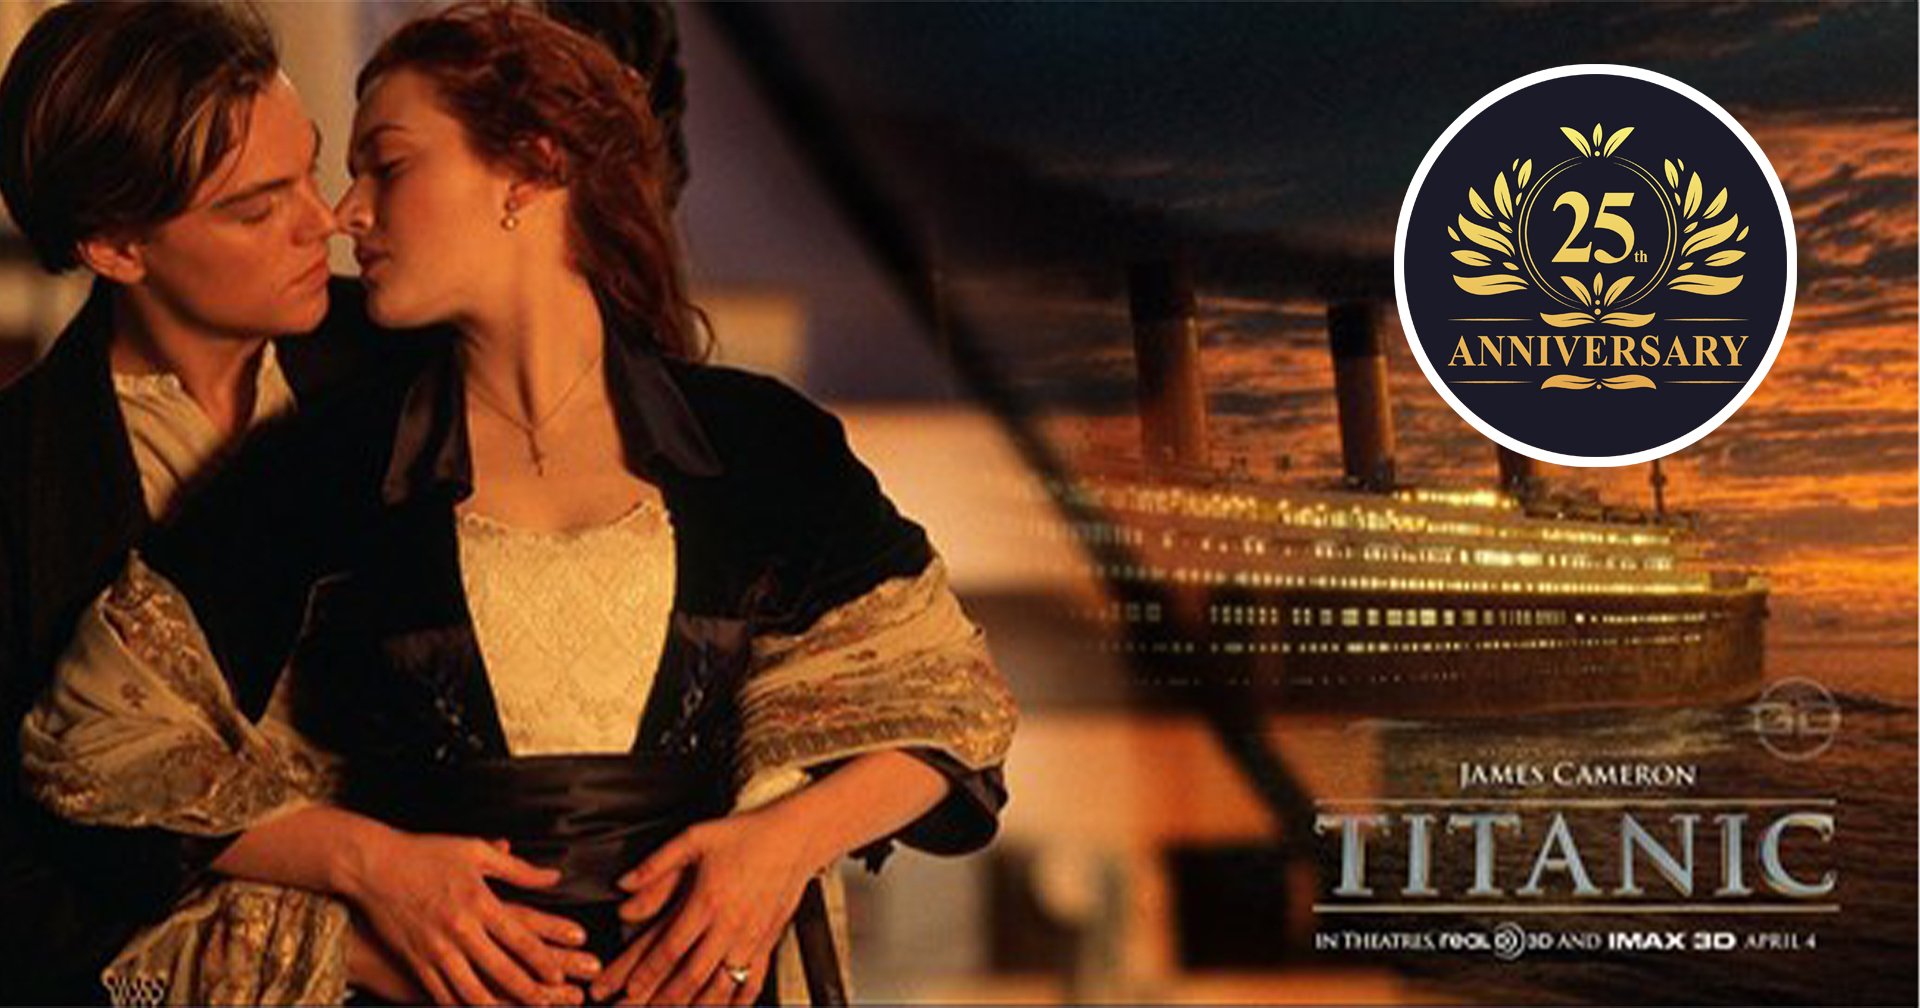 25 เกร็ดน่ารู้จากหนัง Titanic 1997 ในวาระครบรอบ 25 ปี